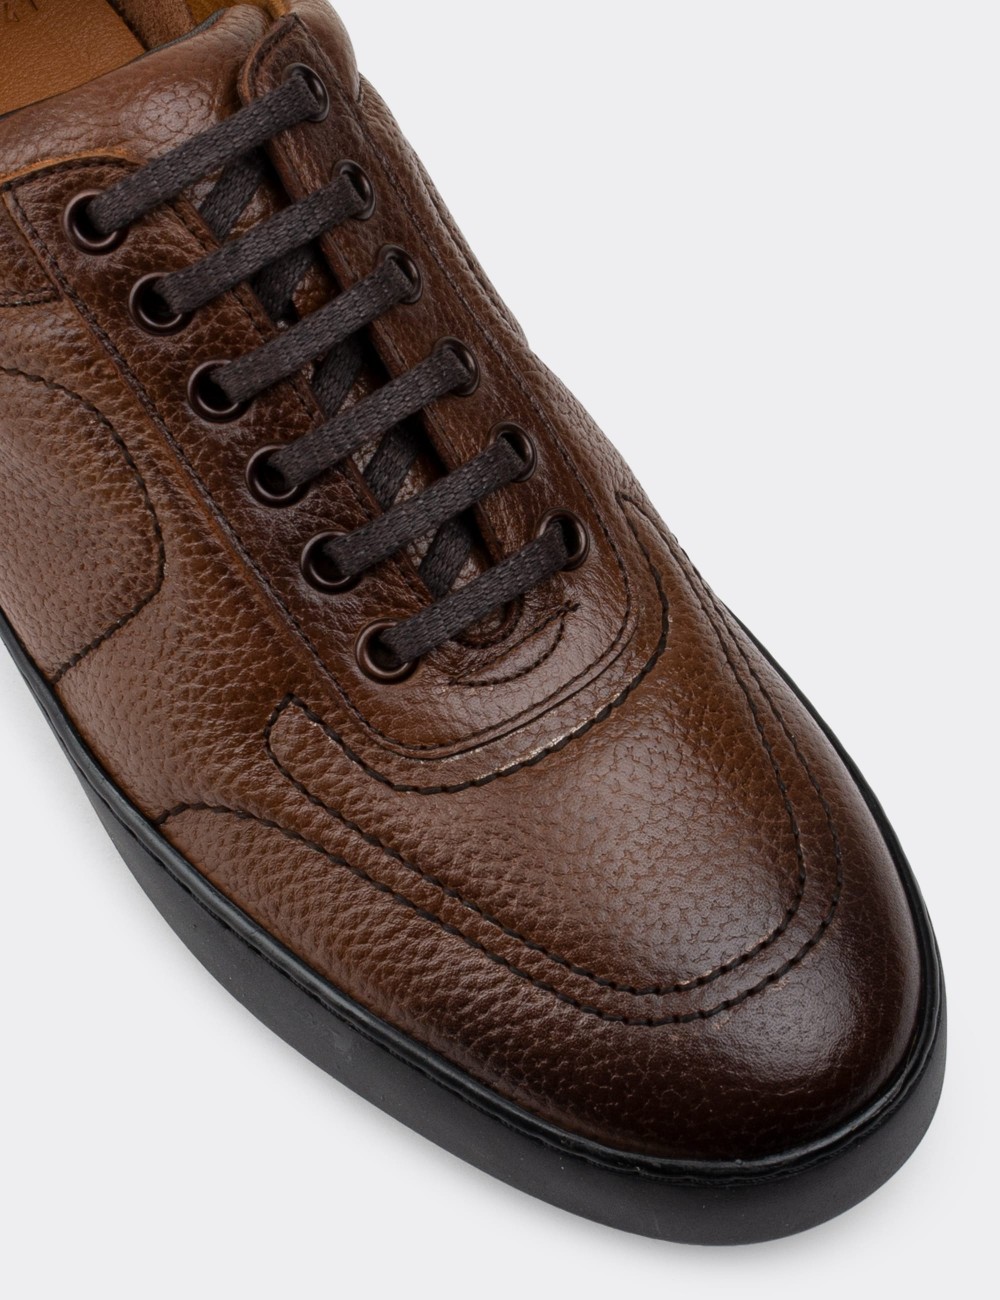 Tan  Leather Sneakers - 01876MTBAC01